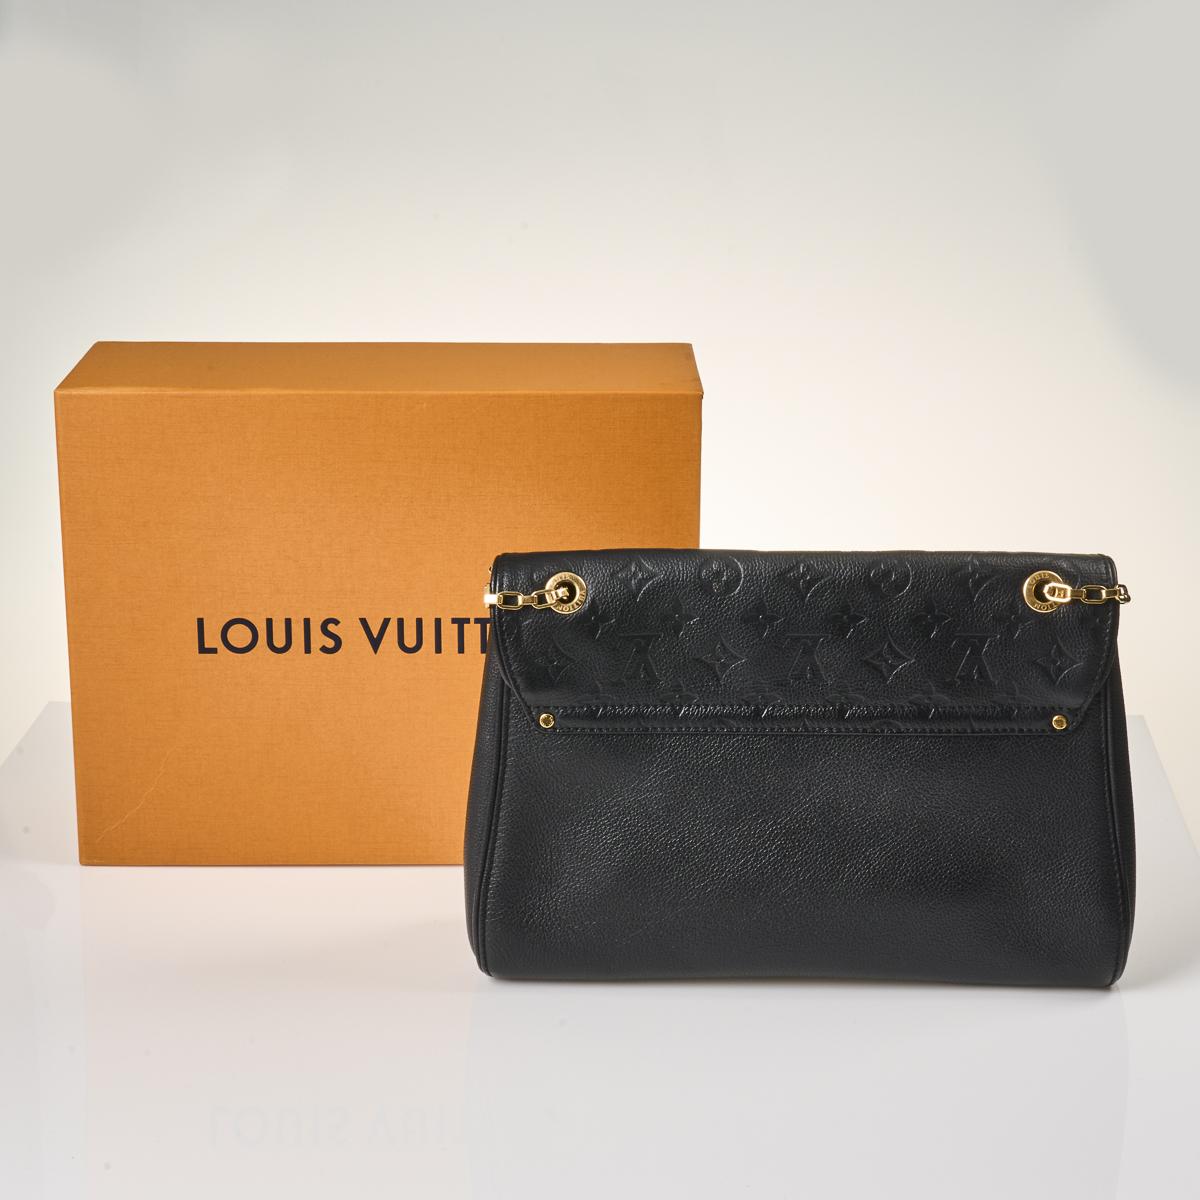 SOLD) Louis Vuitton Monogram Empreinte Black St Germain MM with